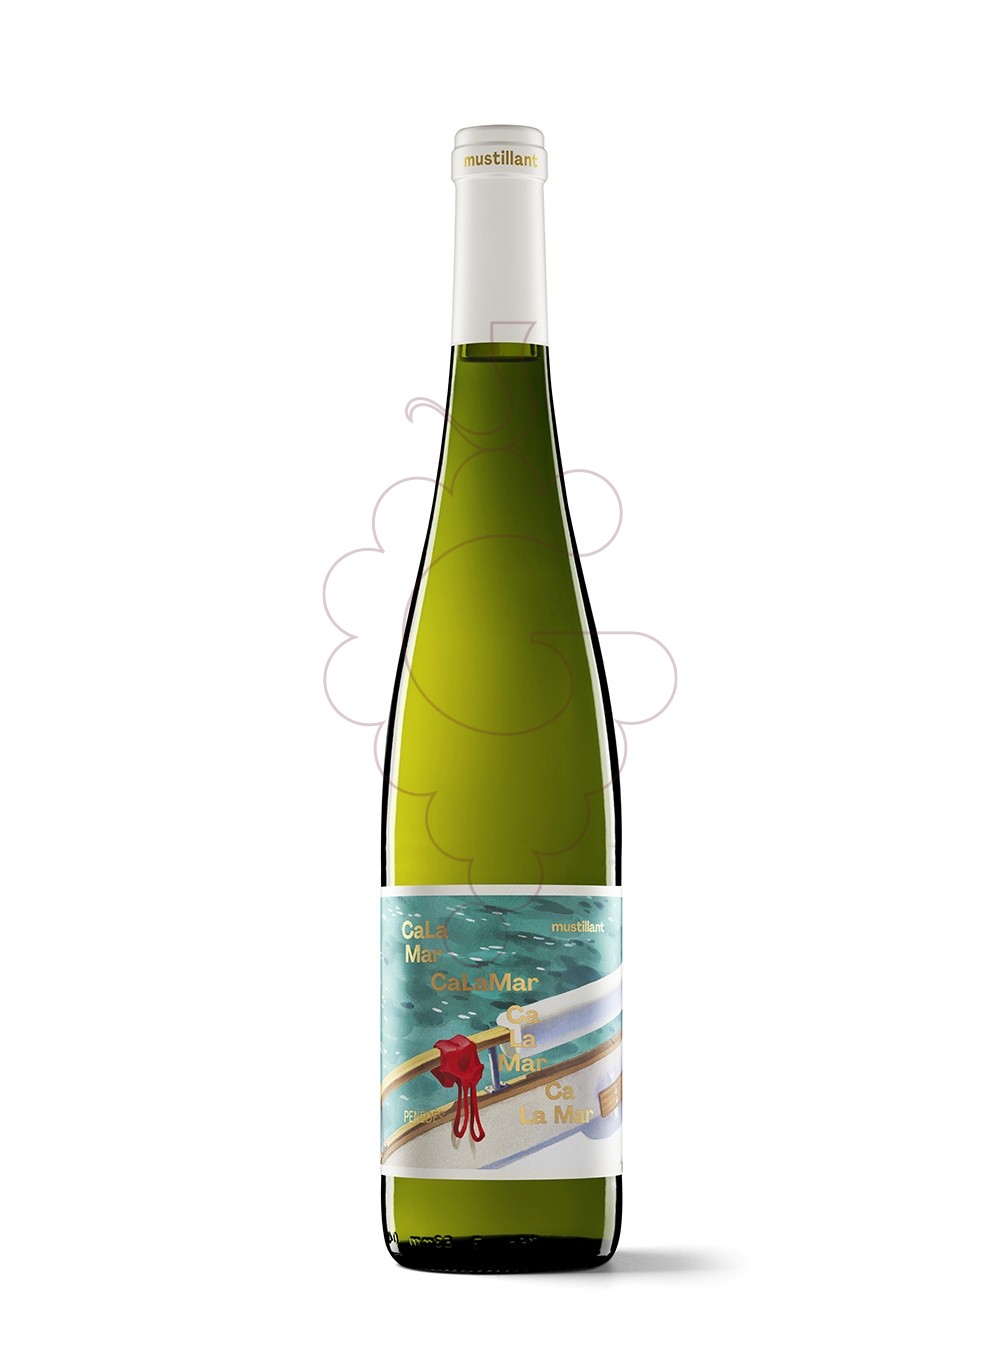 Photo Ca La Mar Mustillant Blanc vin mousseux